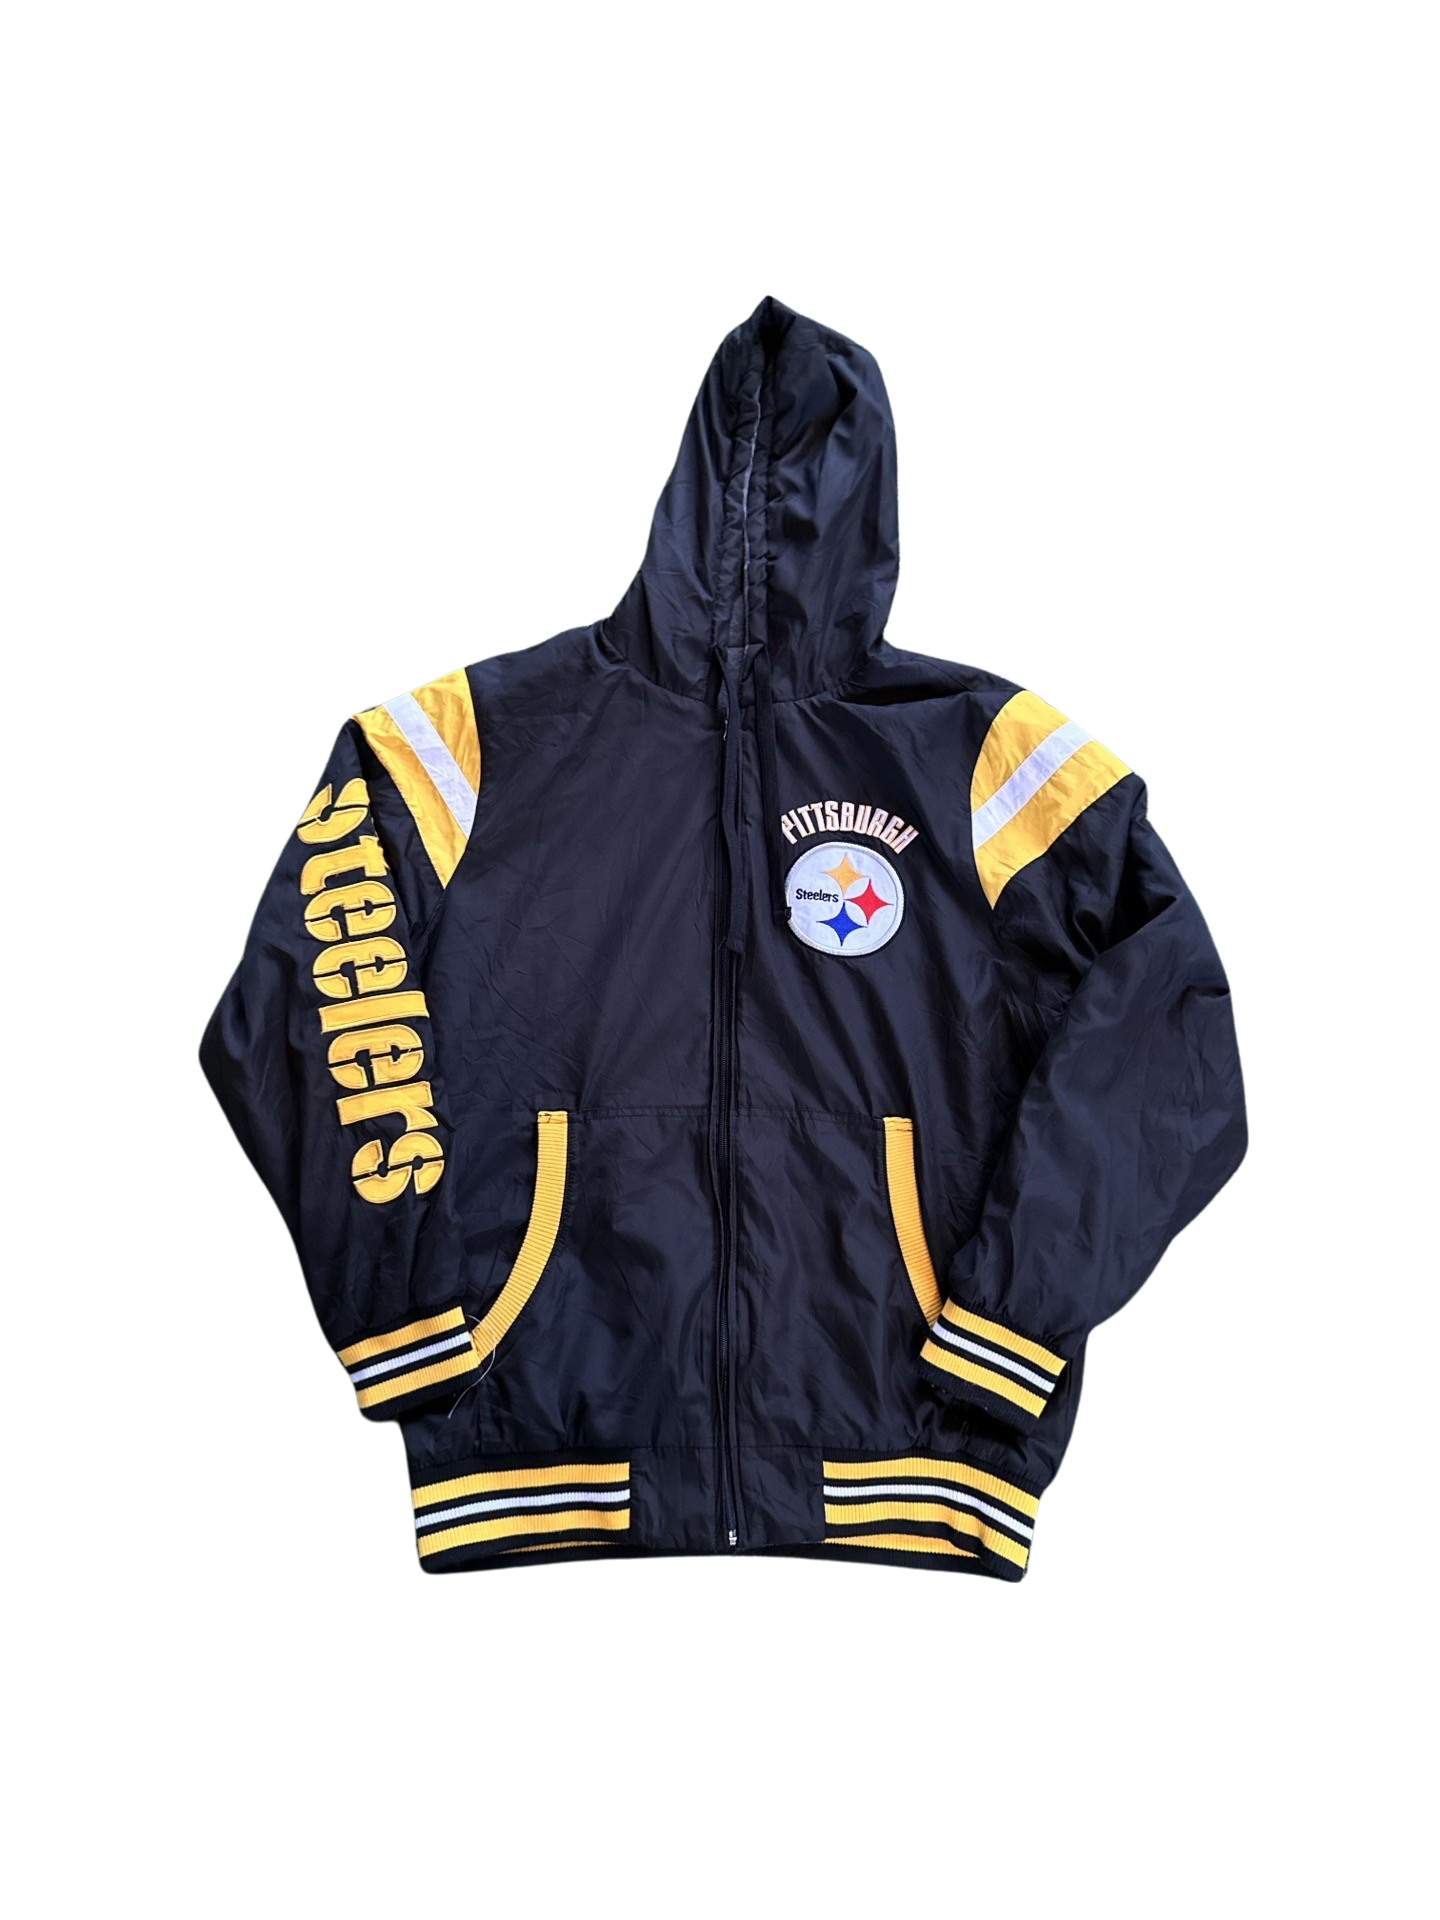 Vintage Pittsburg Steelers Reversible Jacket